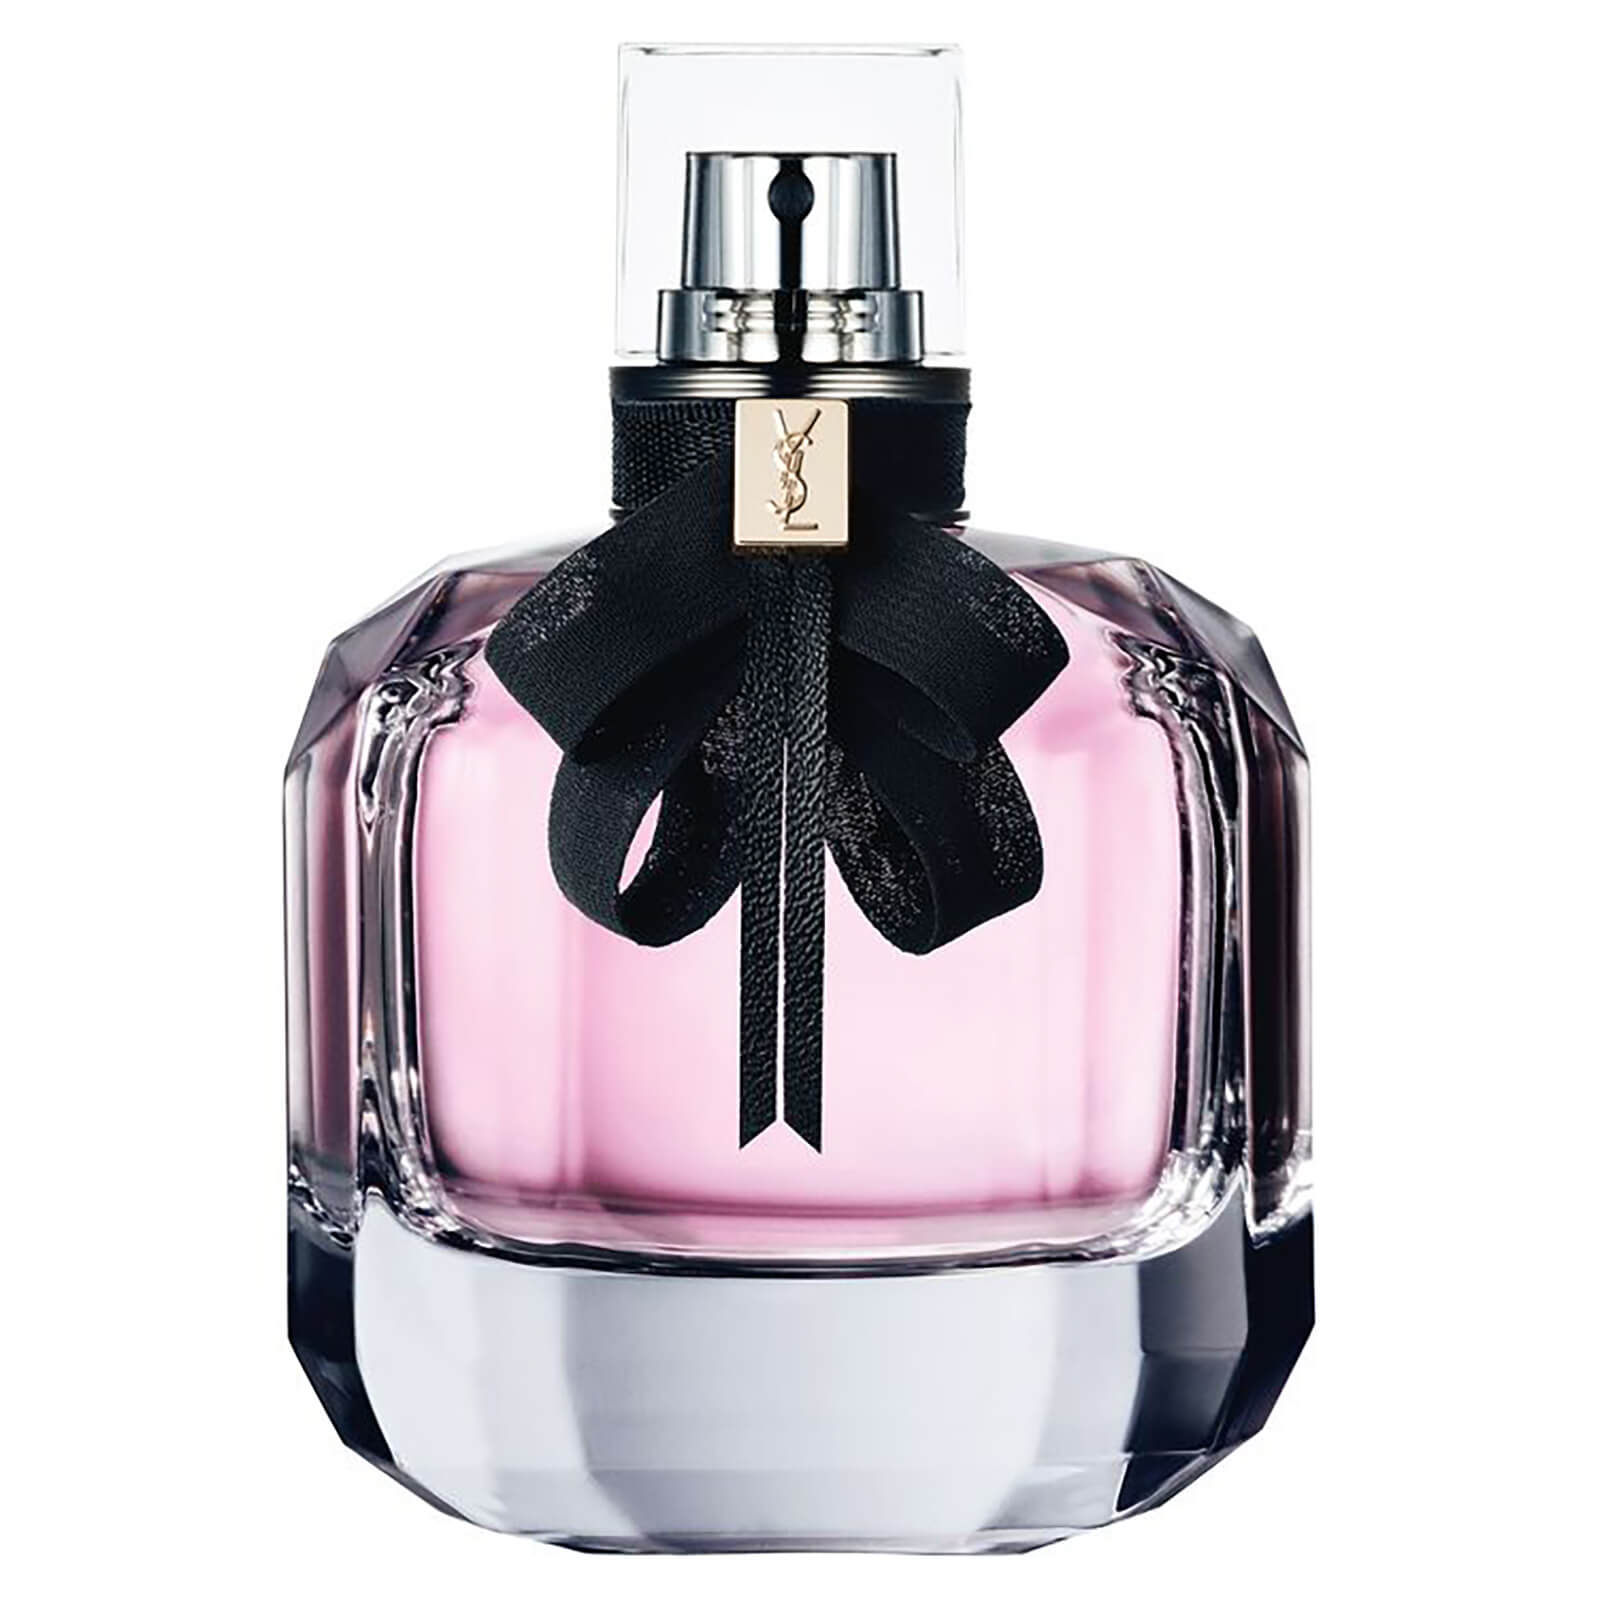 Image of Eau de Parfum Profumo Mon Paris Yves Saint Laurent 50 ml